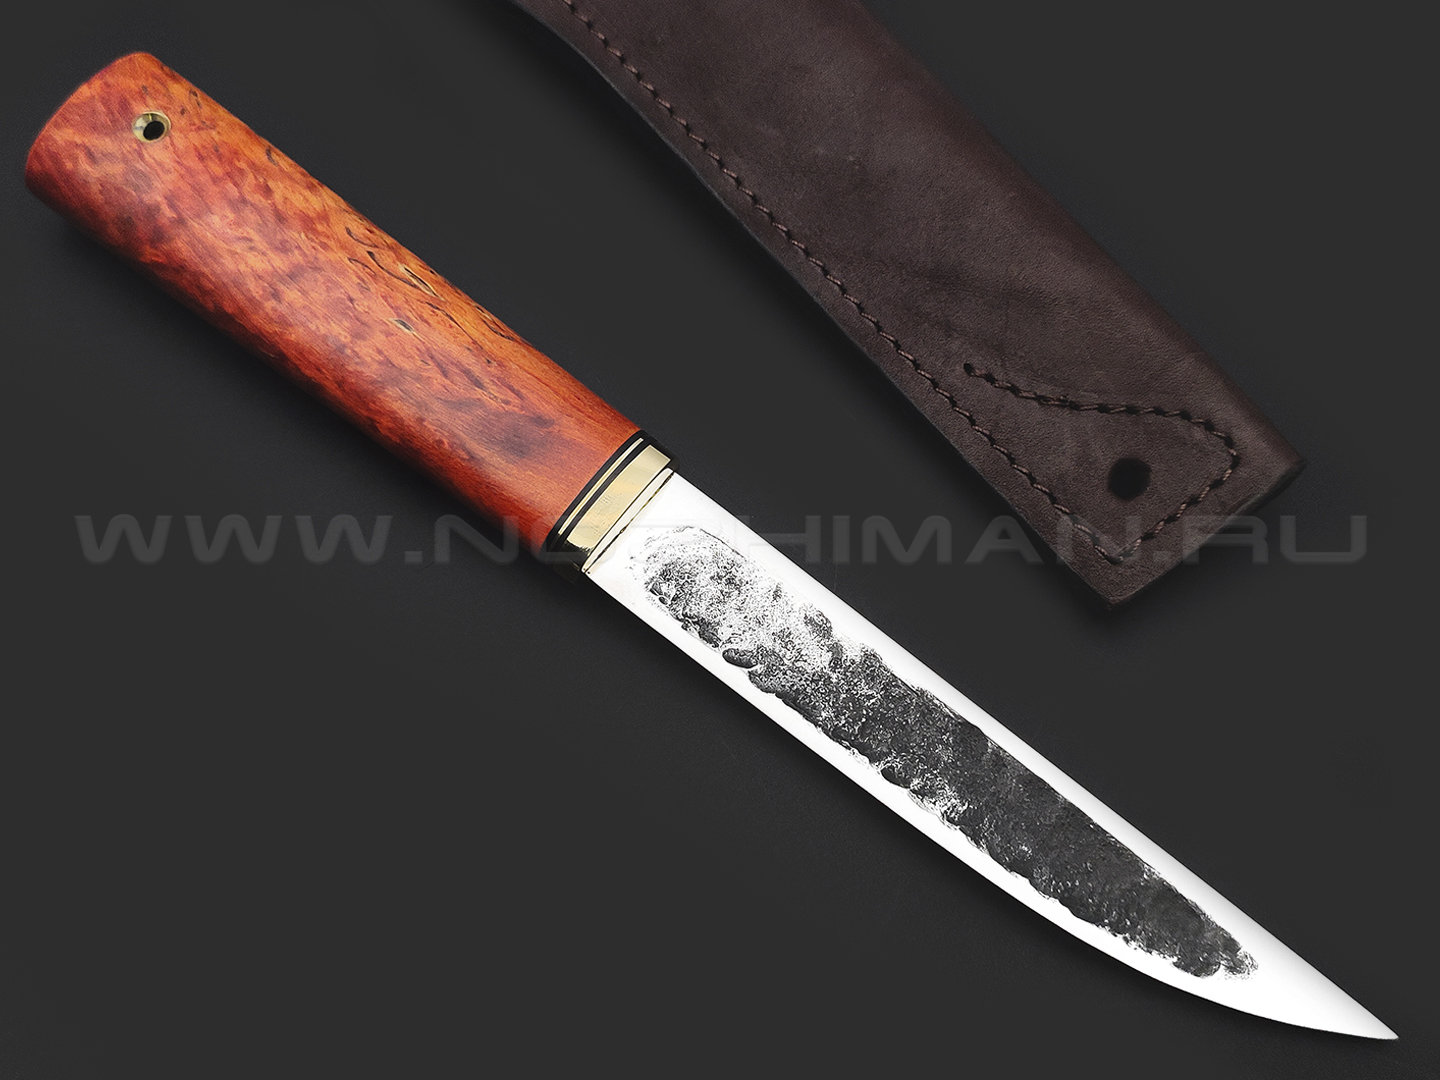 Товарищество Завьялова нож Якут-Б сталь K340, рукоять Карельская береза оранжевая, латунь